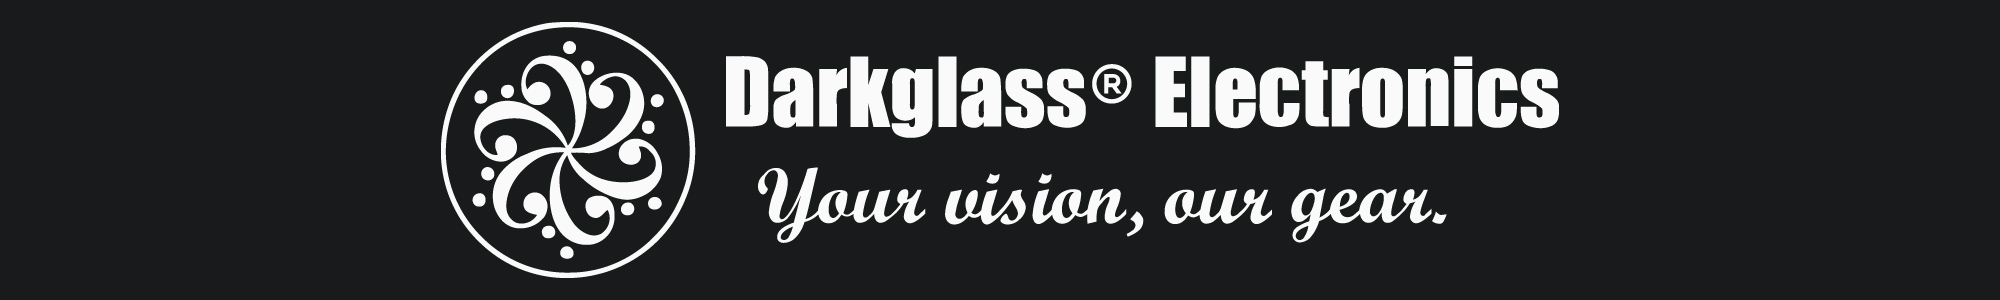 Darkglass Brand Logo White on Black Background